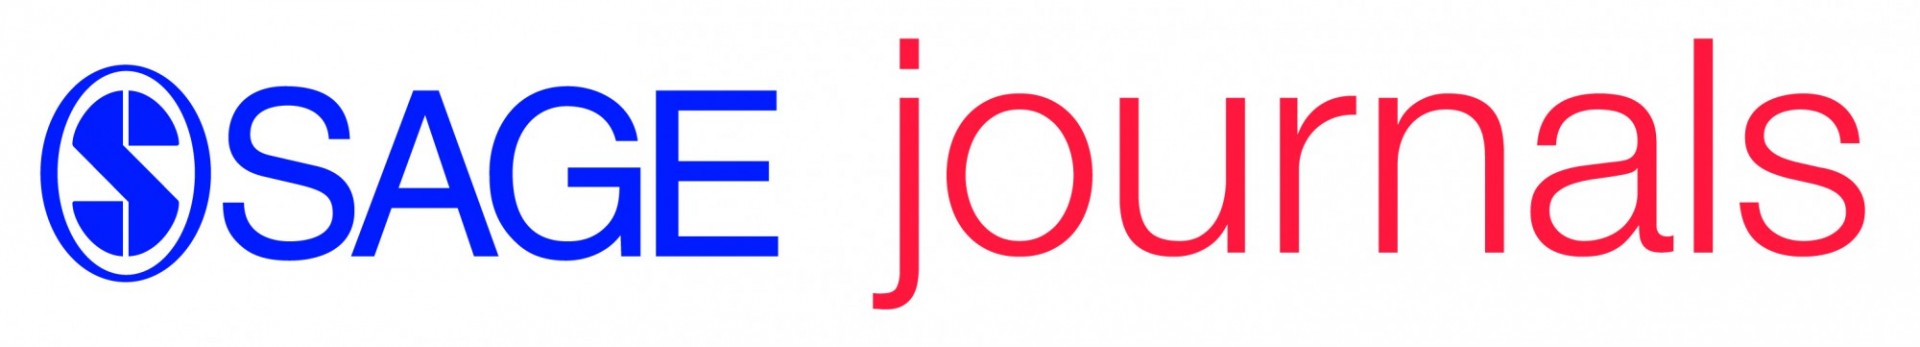 sage journals logo